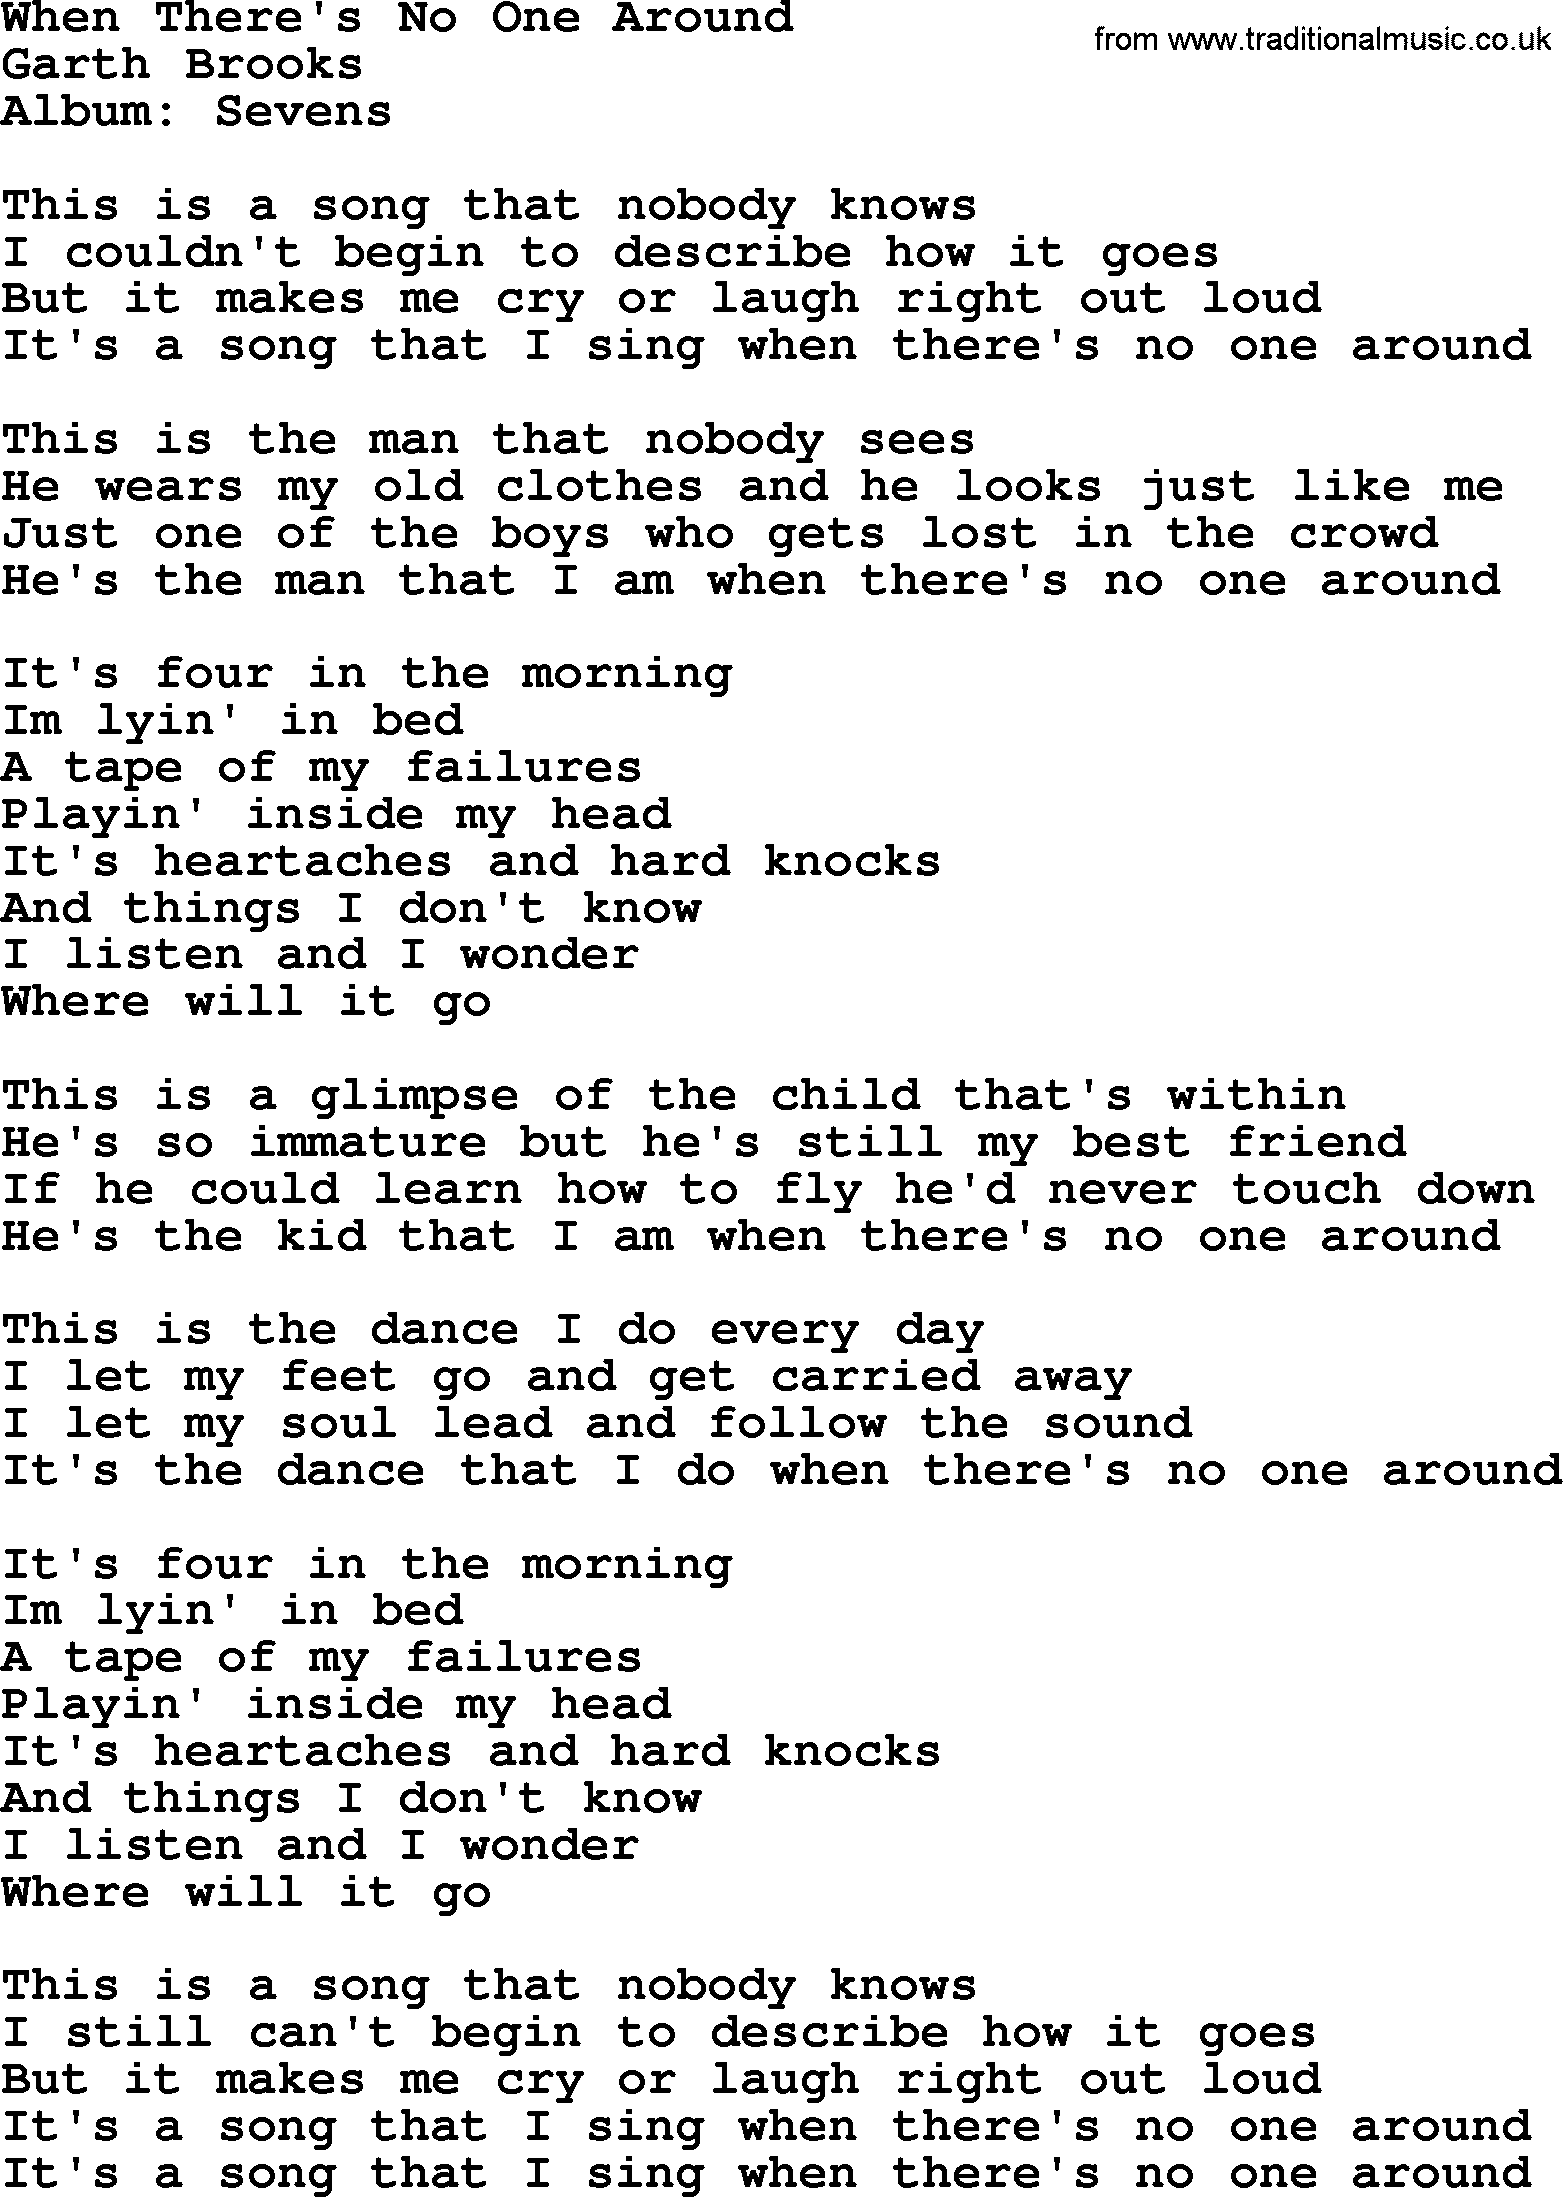 Garth Brooks song: When There's No One Around, lyrics